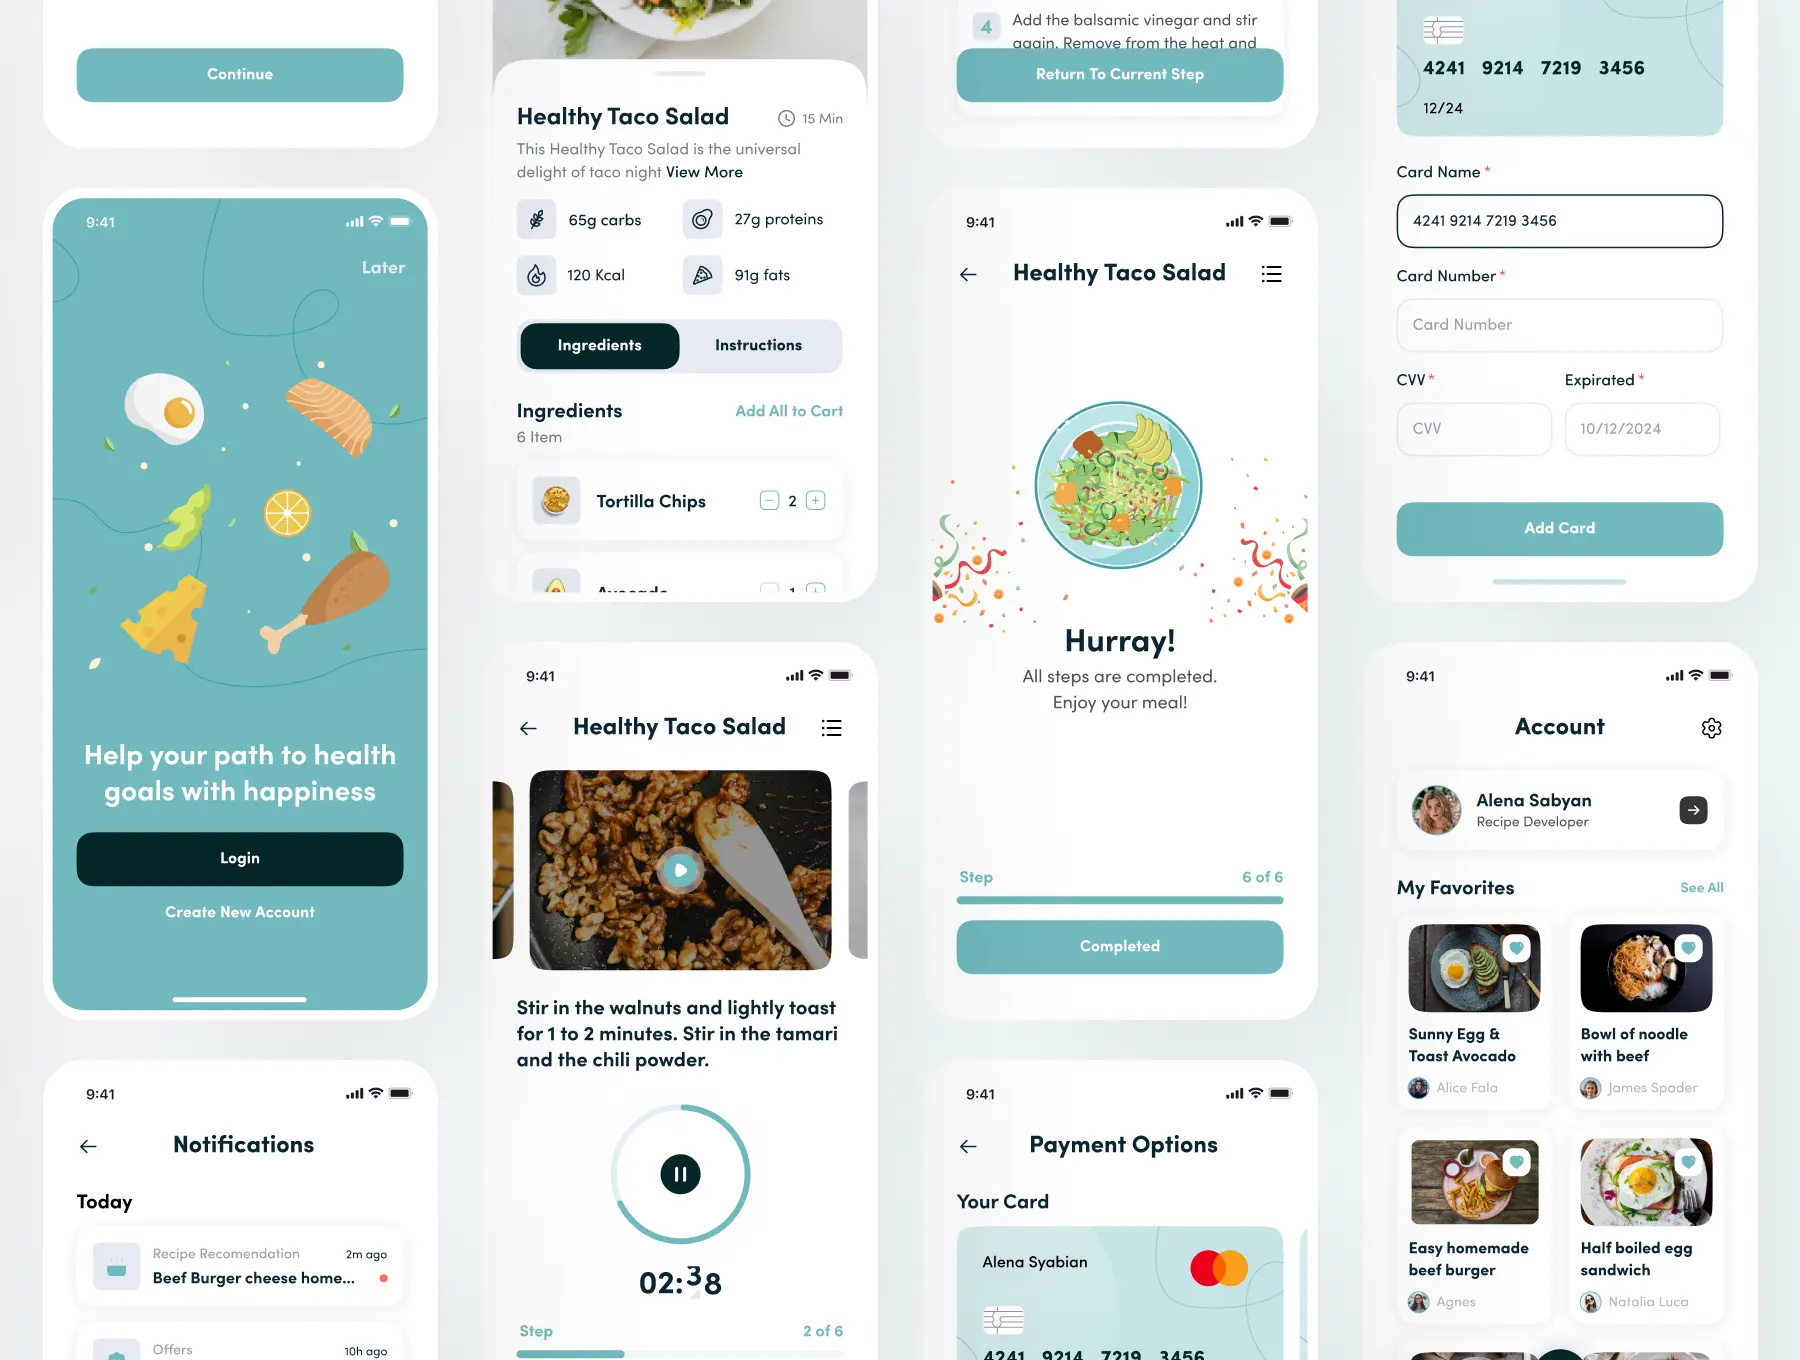 食品/食谱/烹饪App应用界面UI套件下载